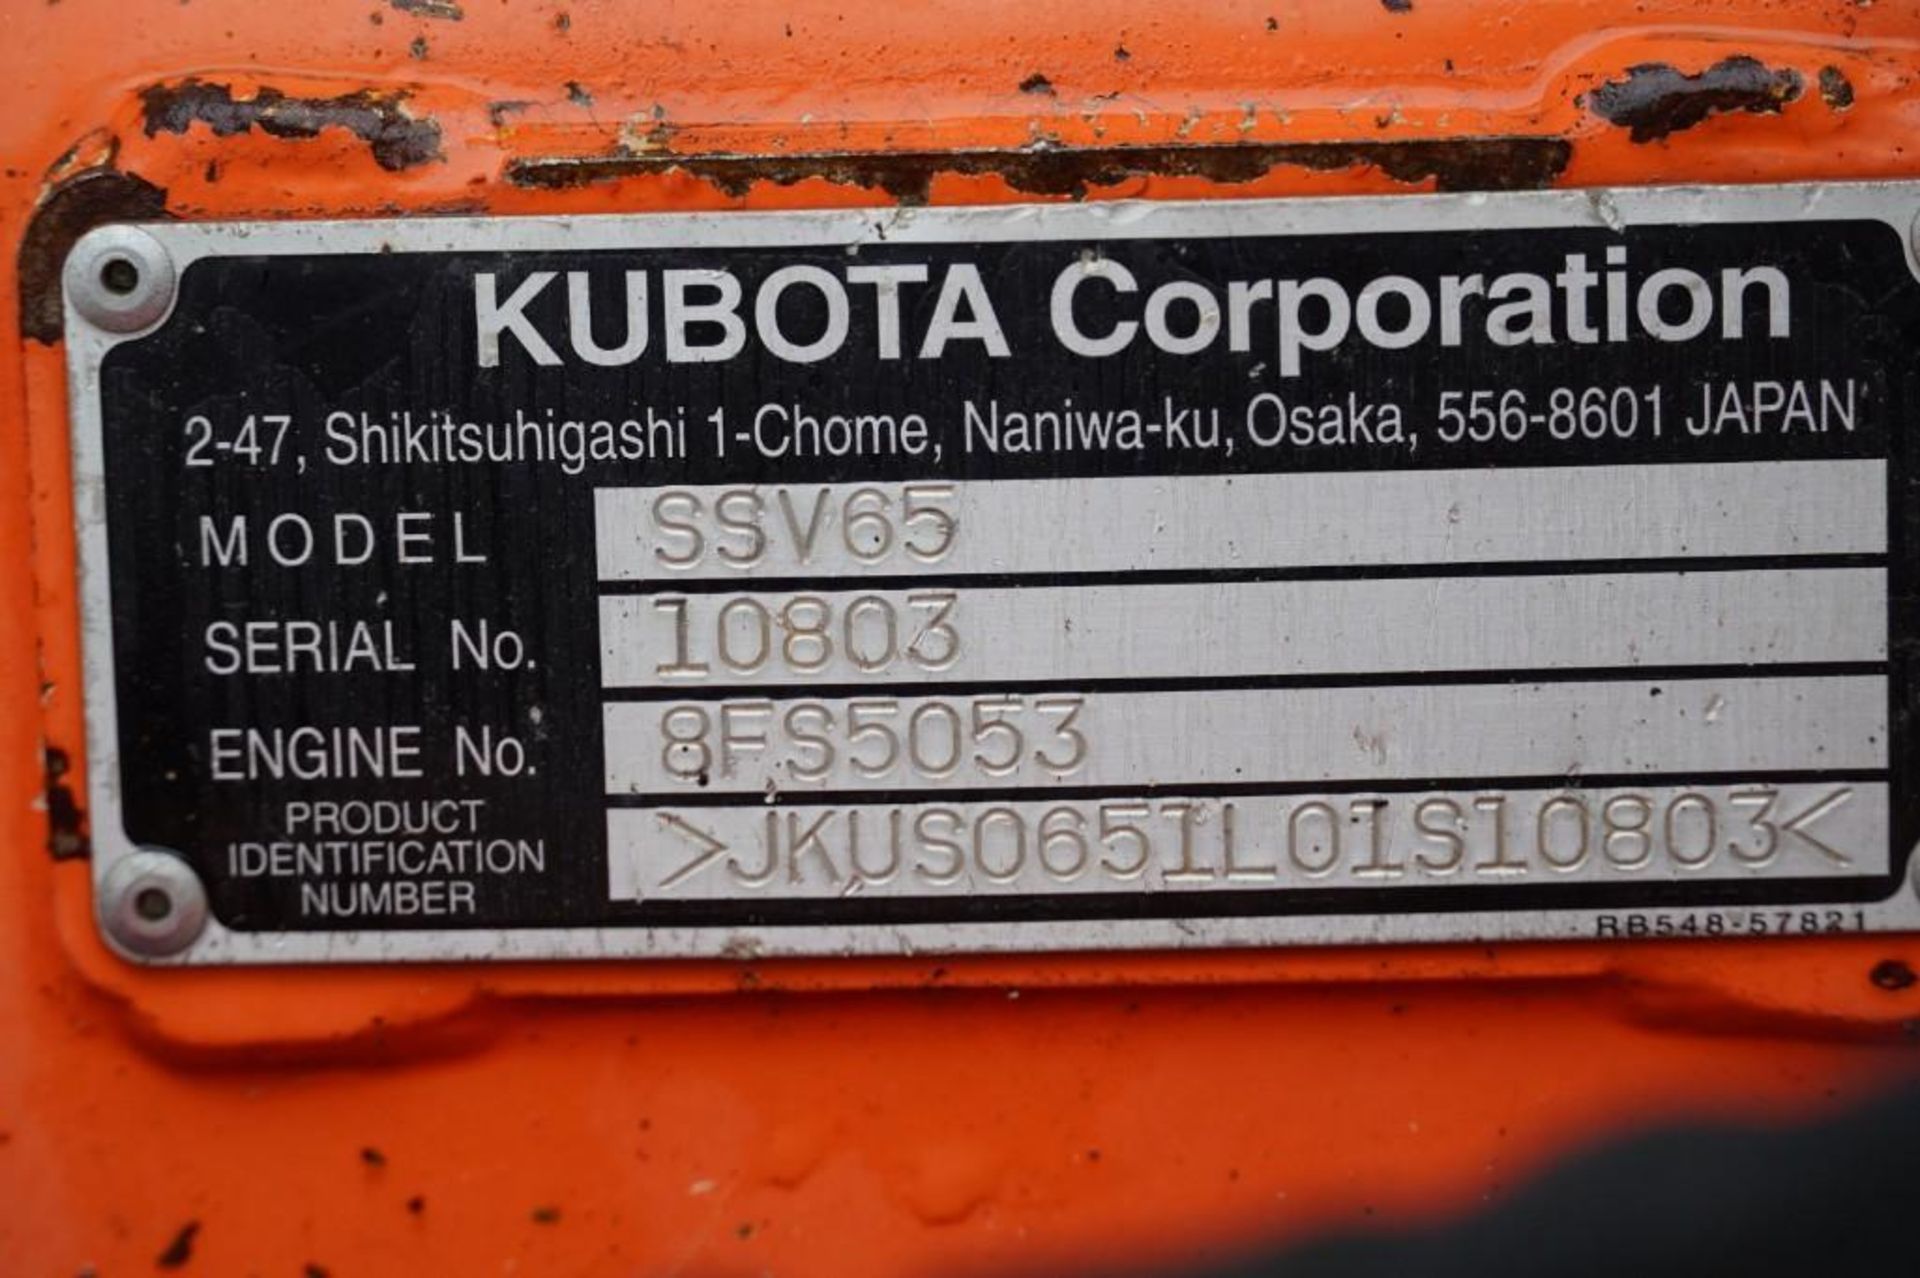 2016 Kubota SSV65 Skid Steer - Image 21 of 44